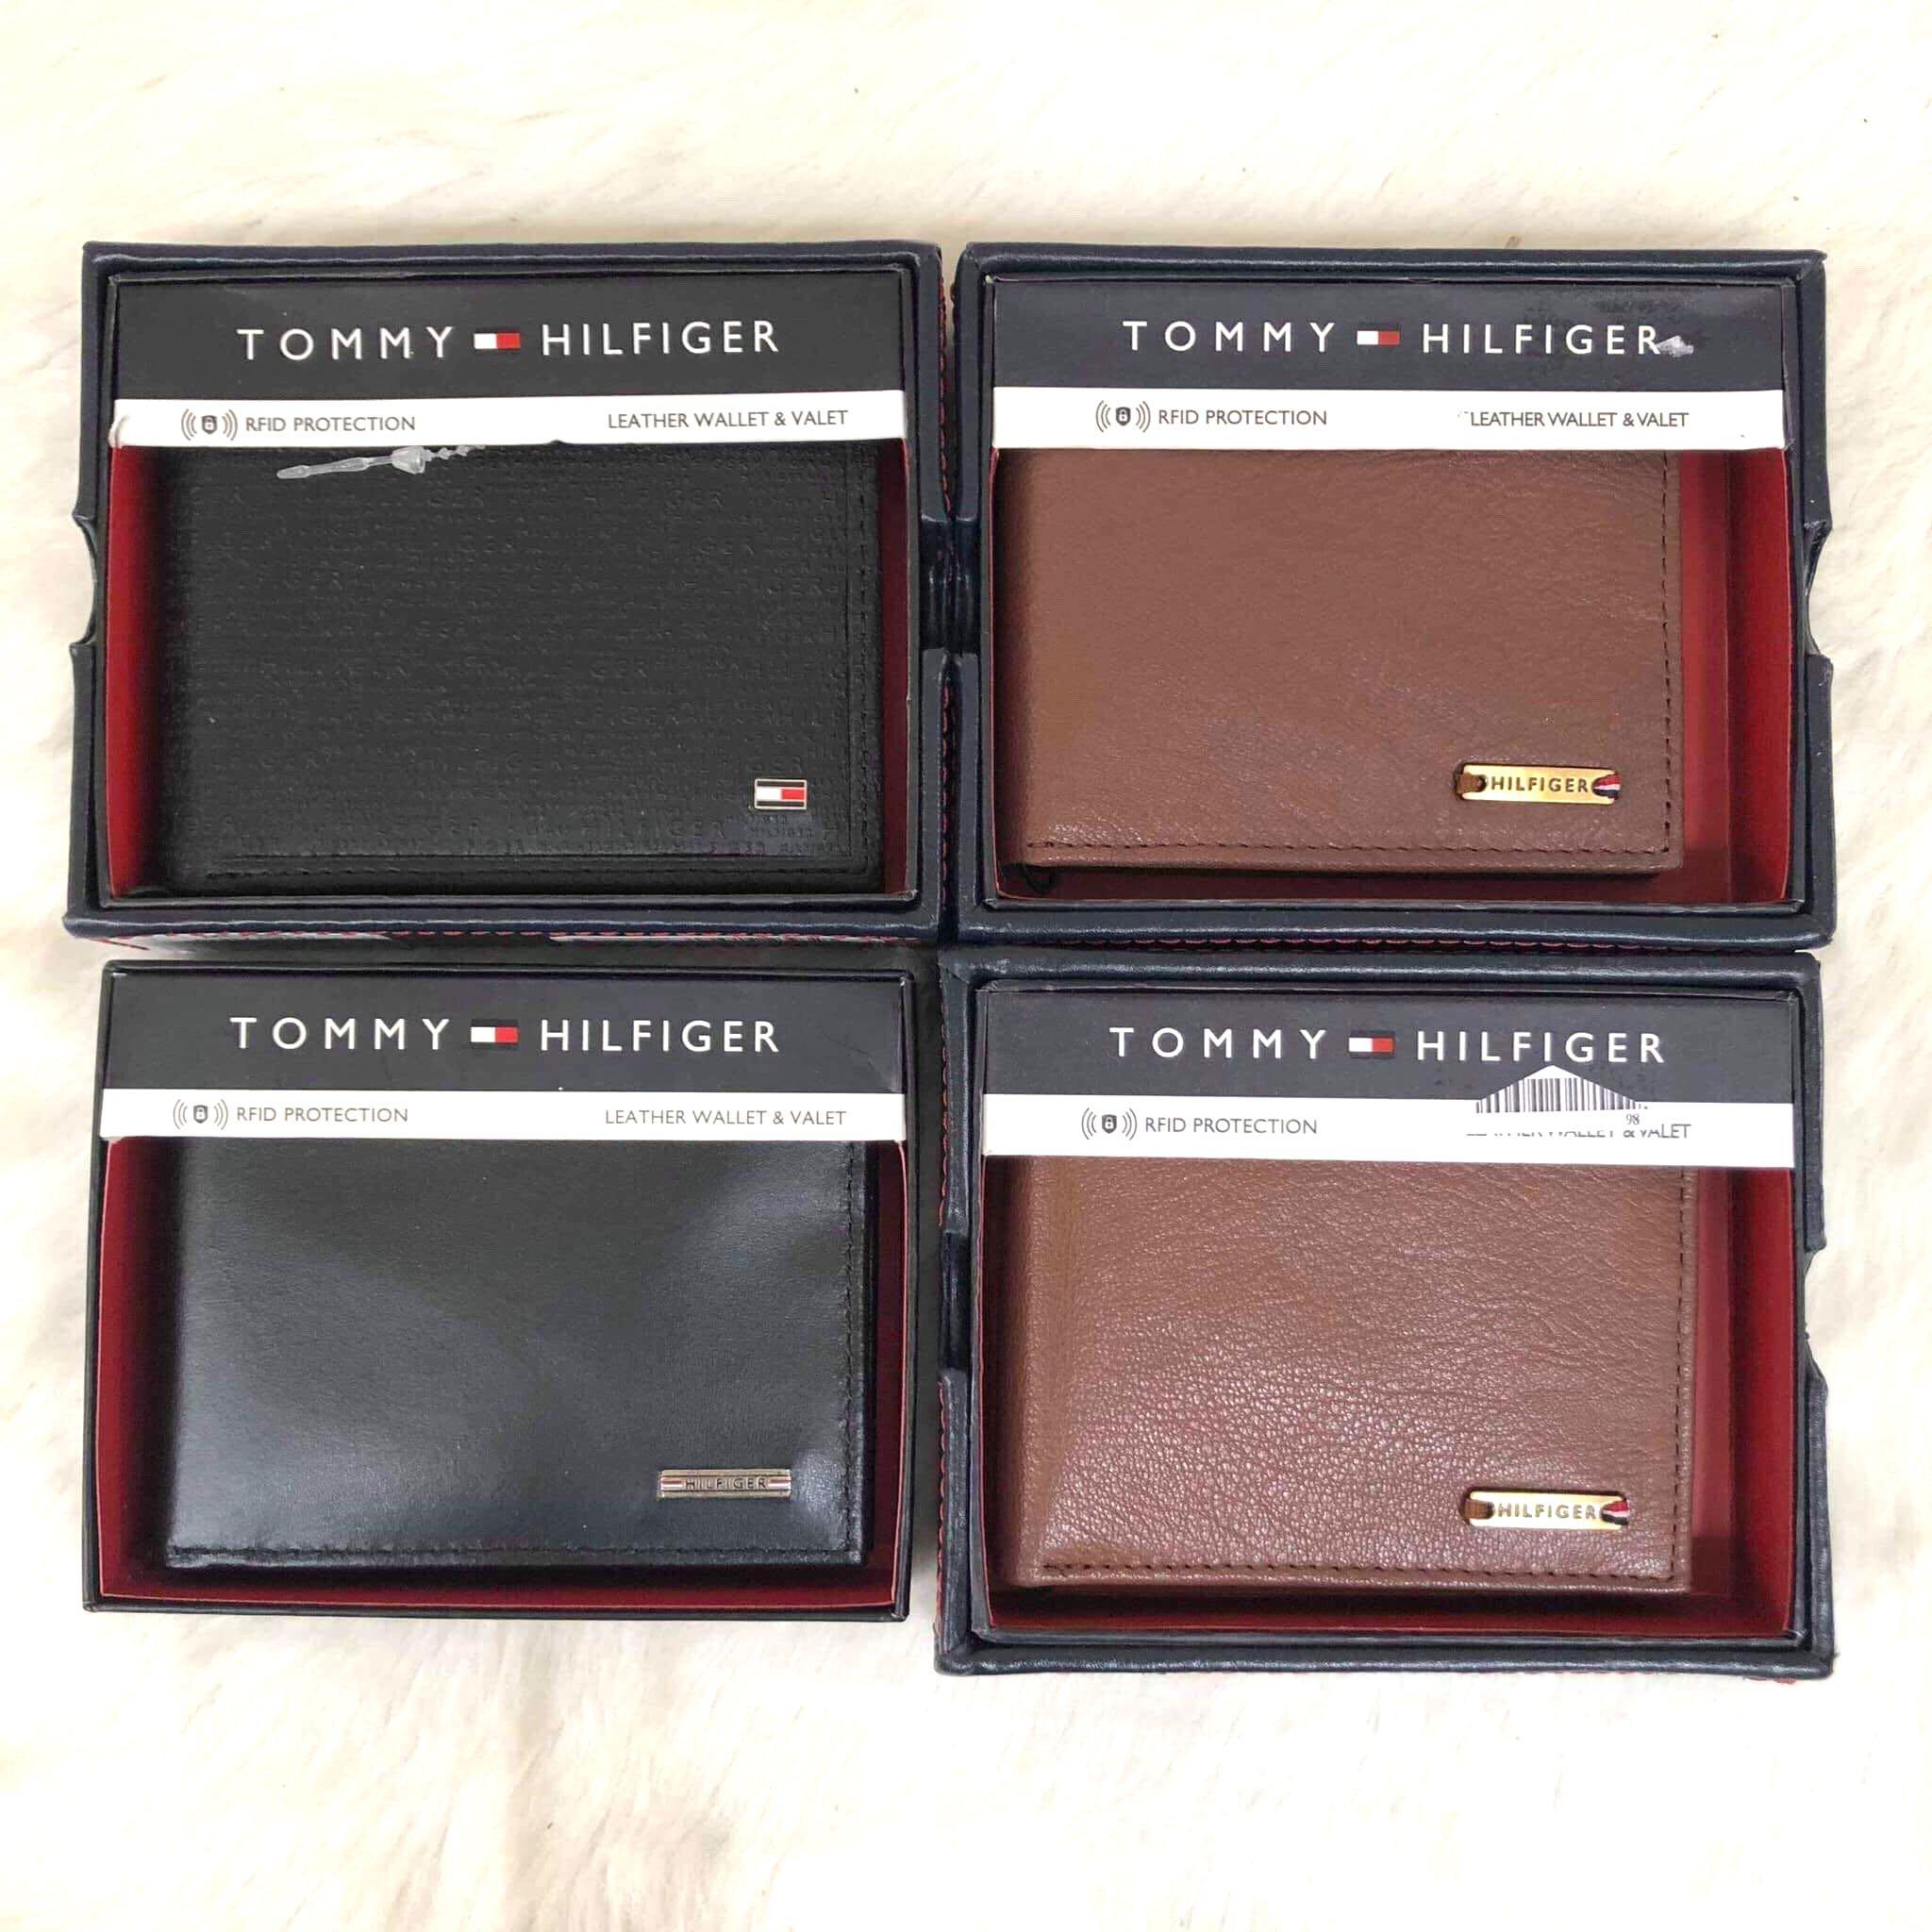 tommy hilfiger wallet original vs fake 